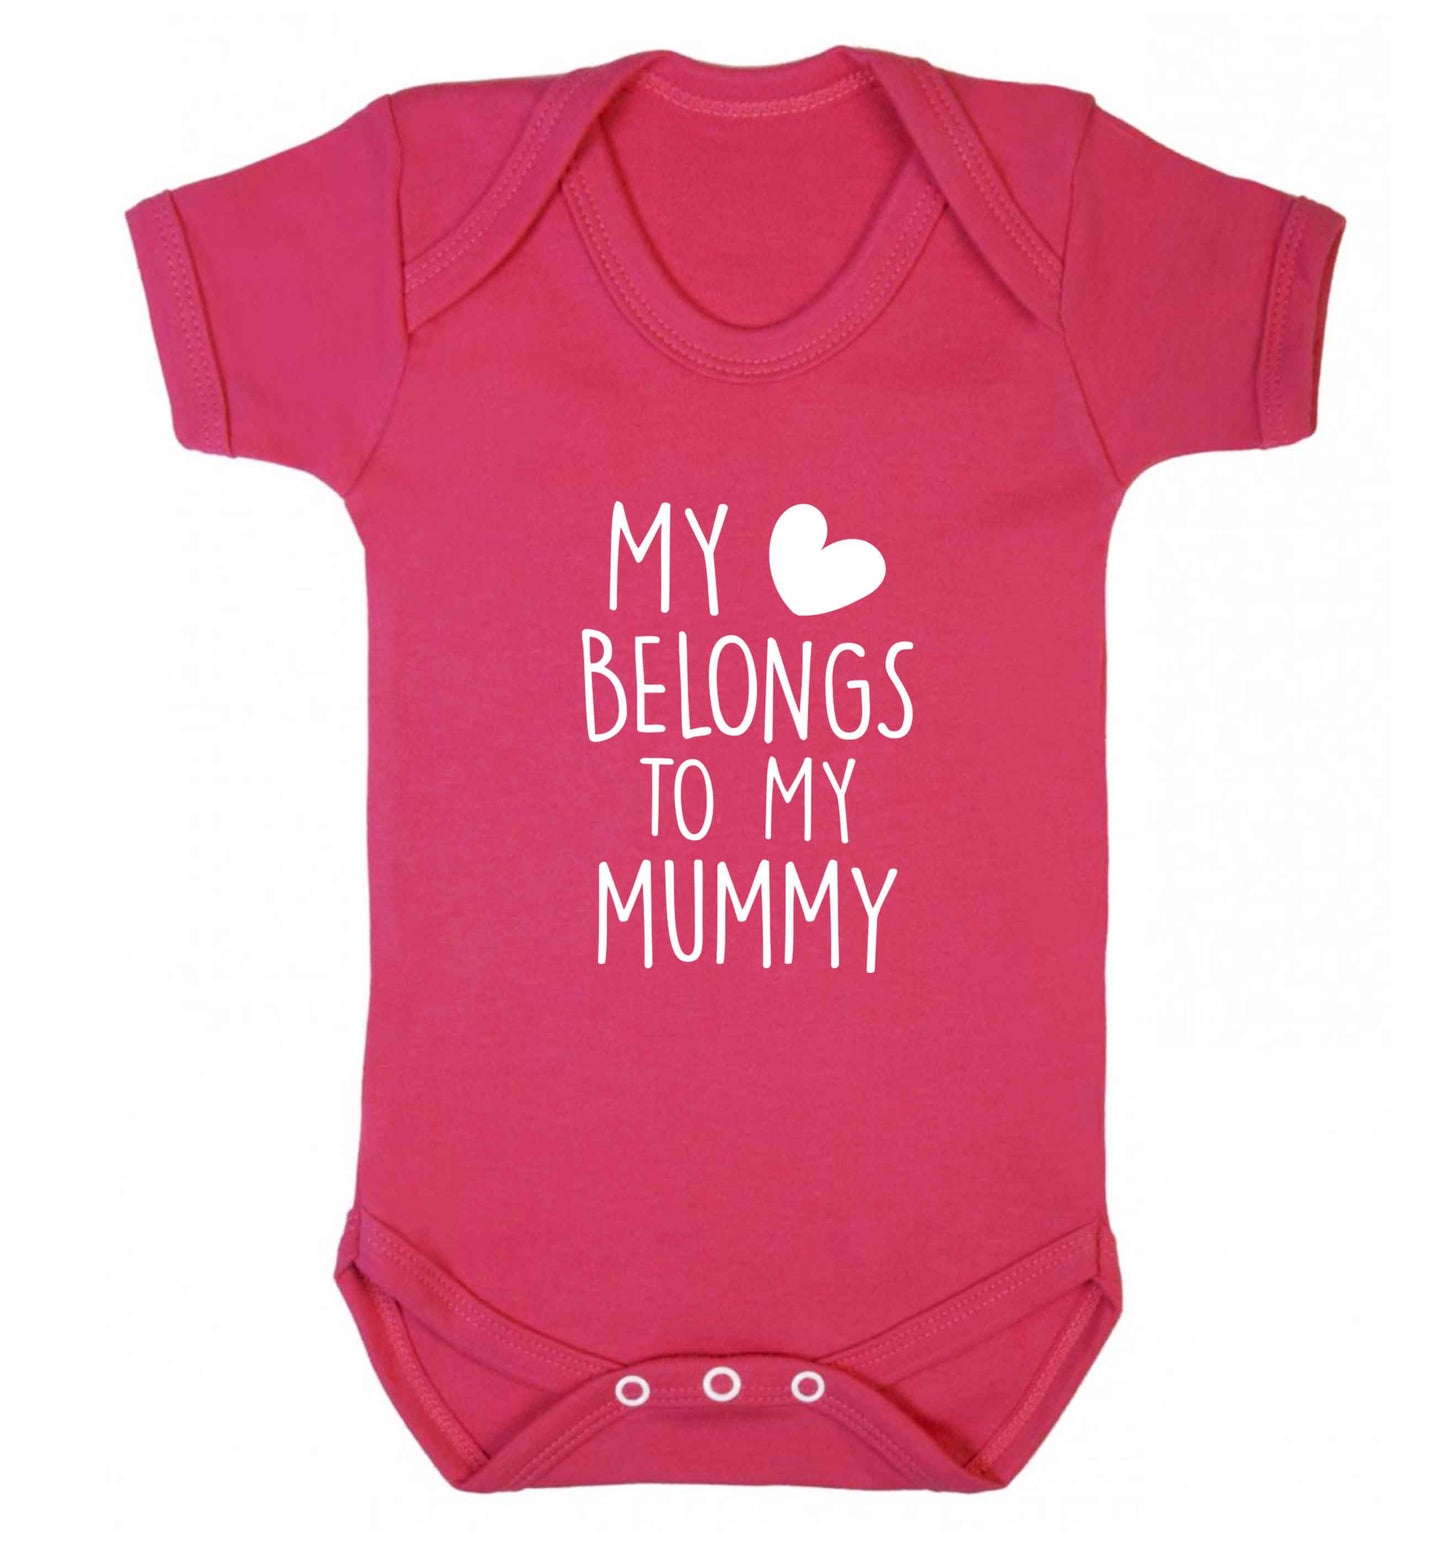 My heart belongs to my mummy baby vest dark pink 18-24 months